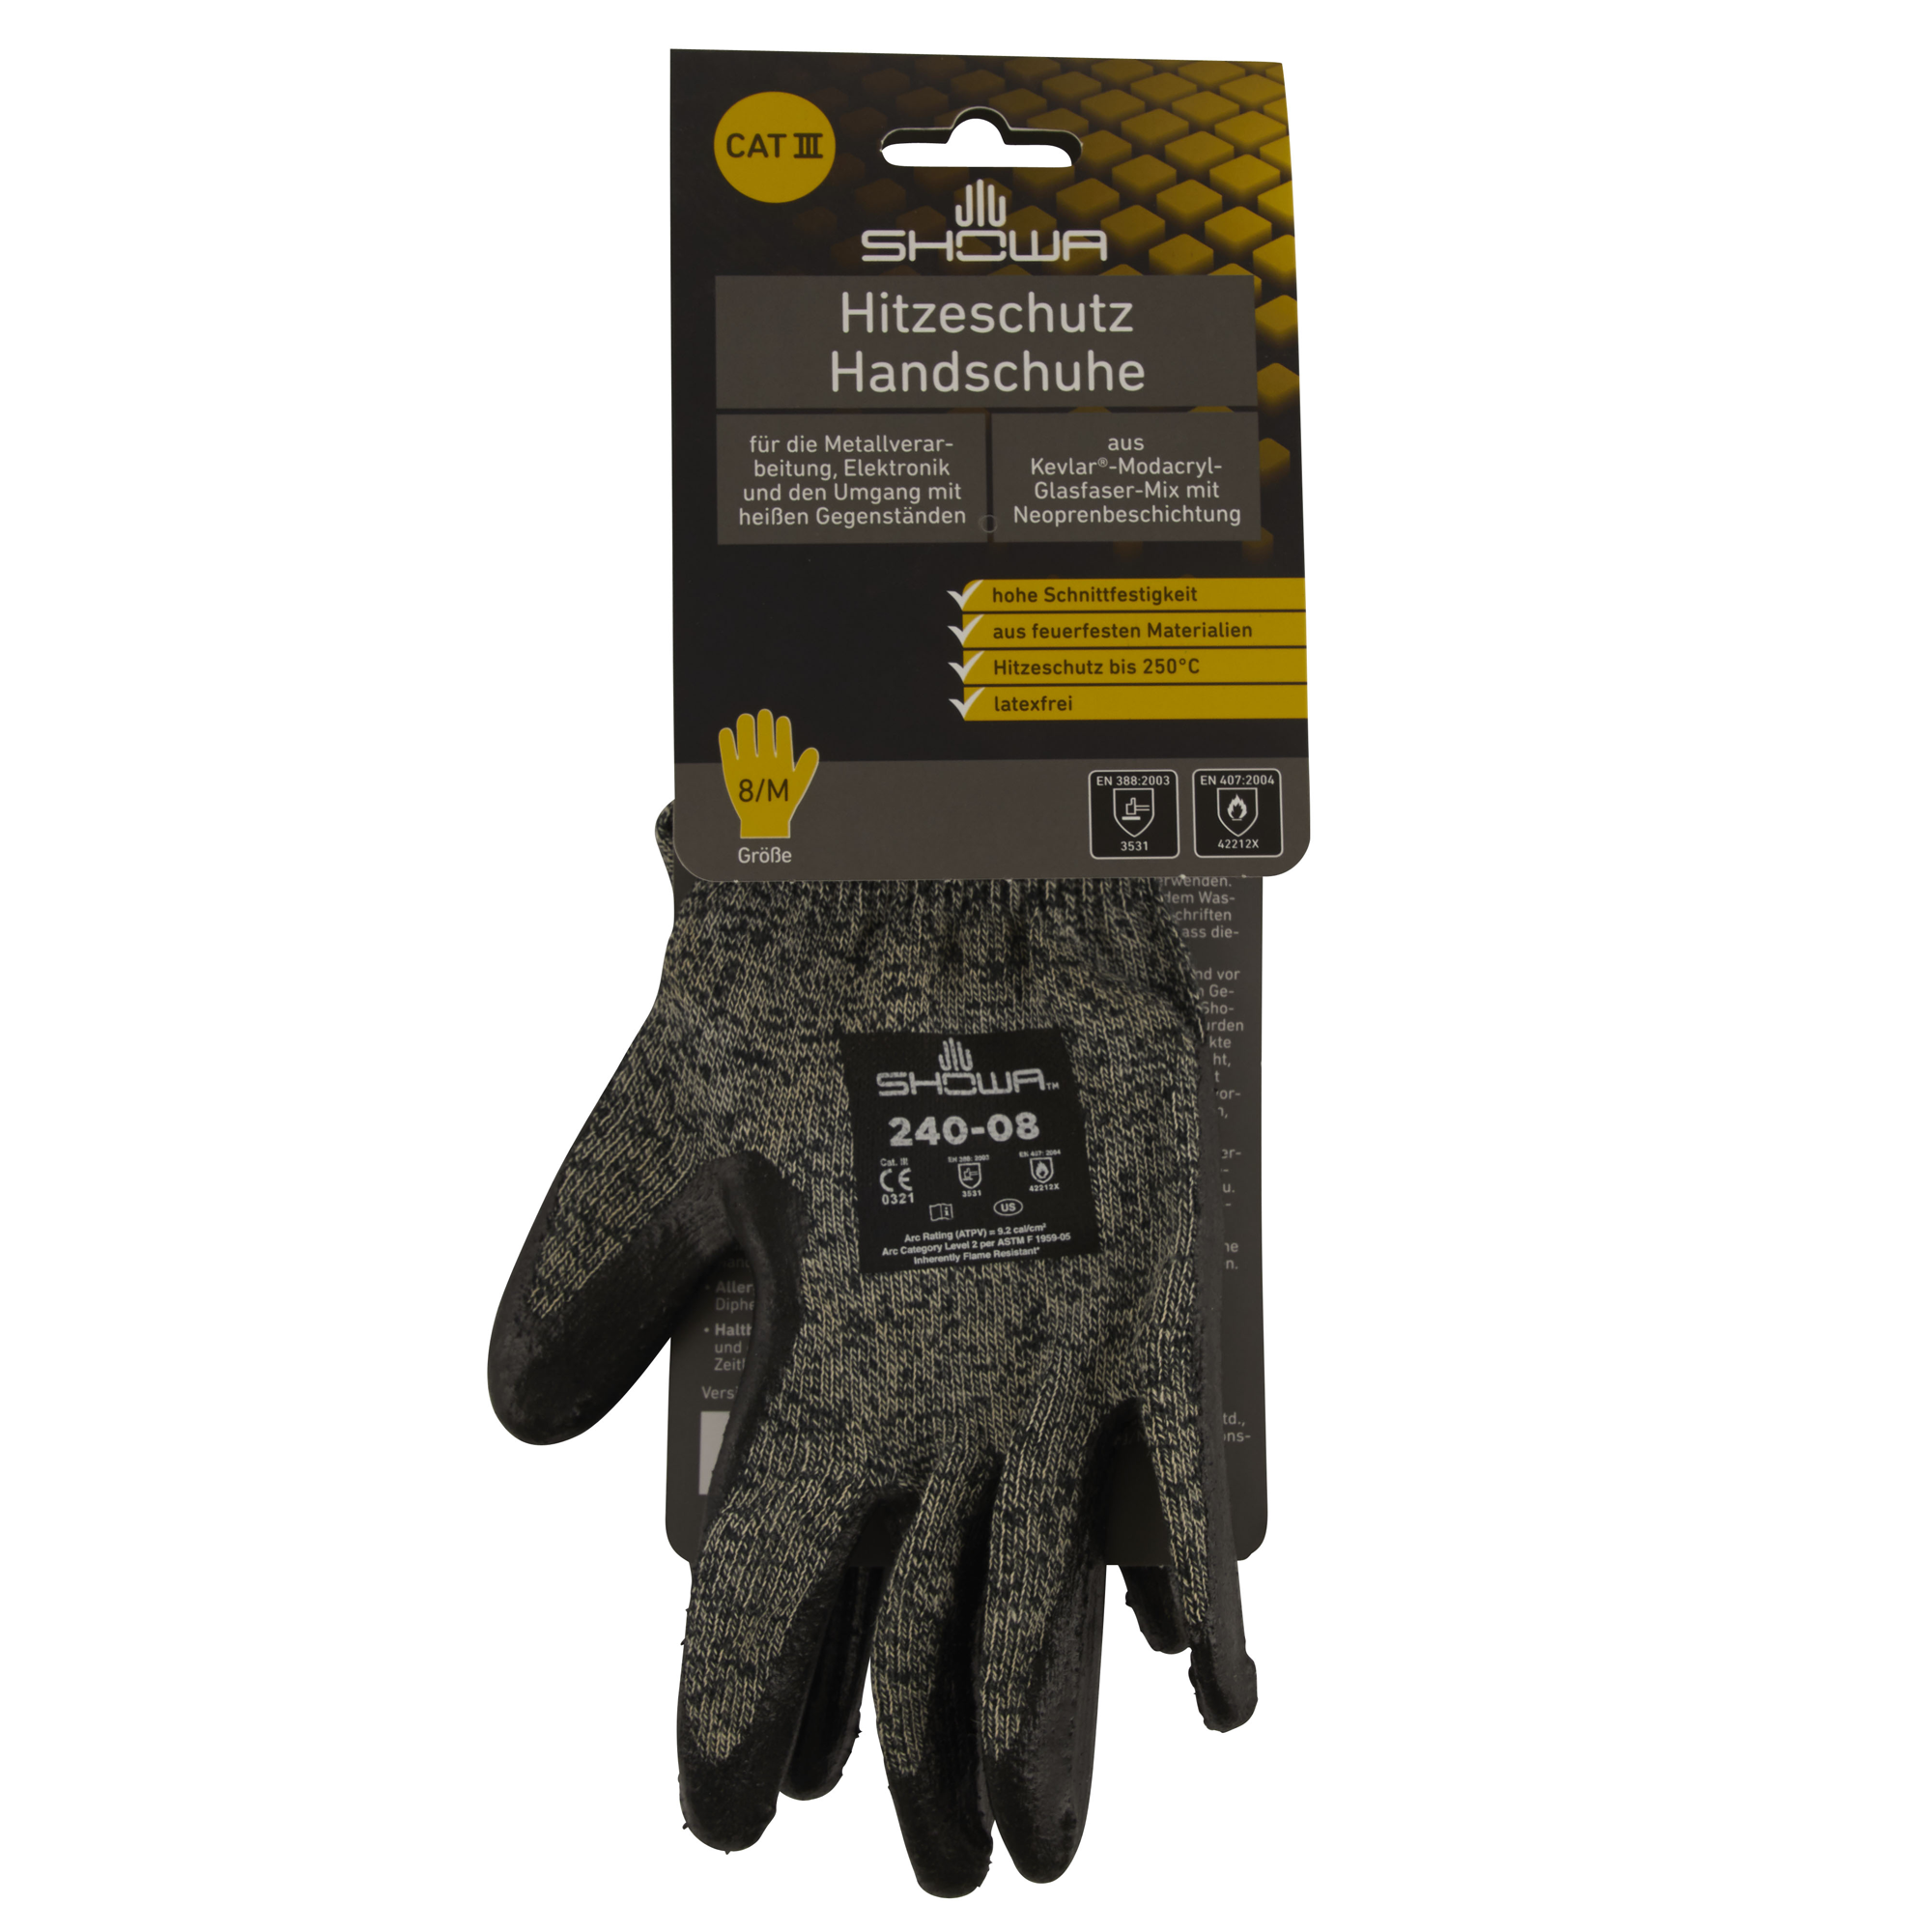 Hitzeschutz Handschuhe Größe 8/M + product picture